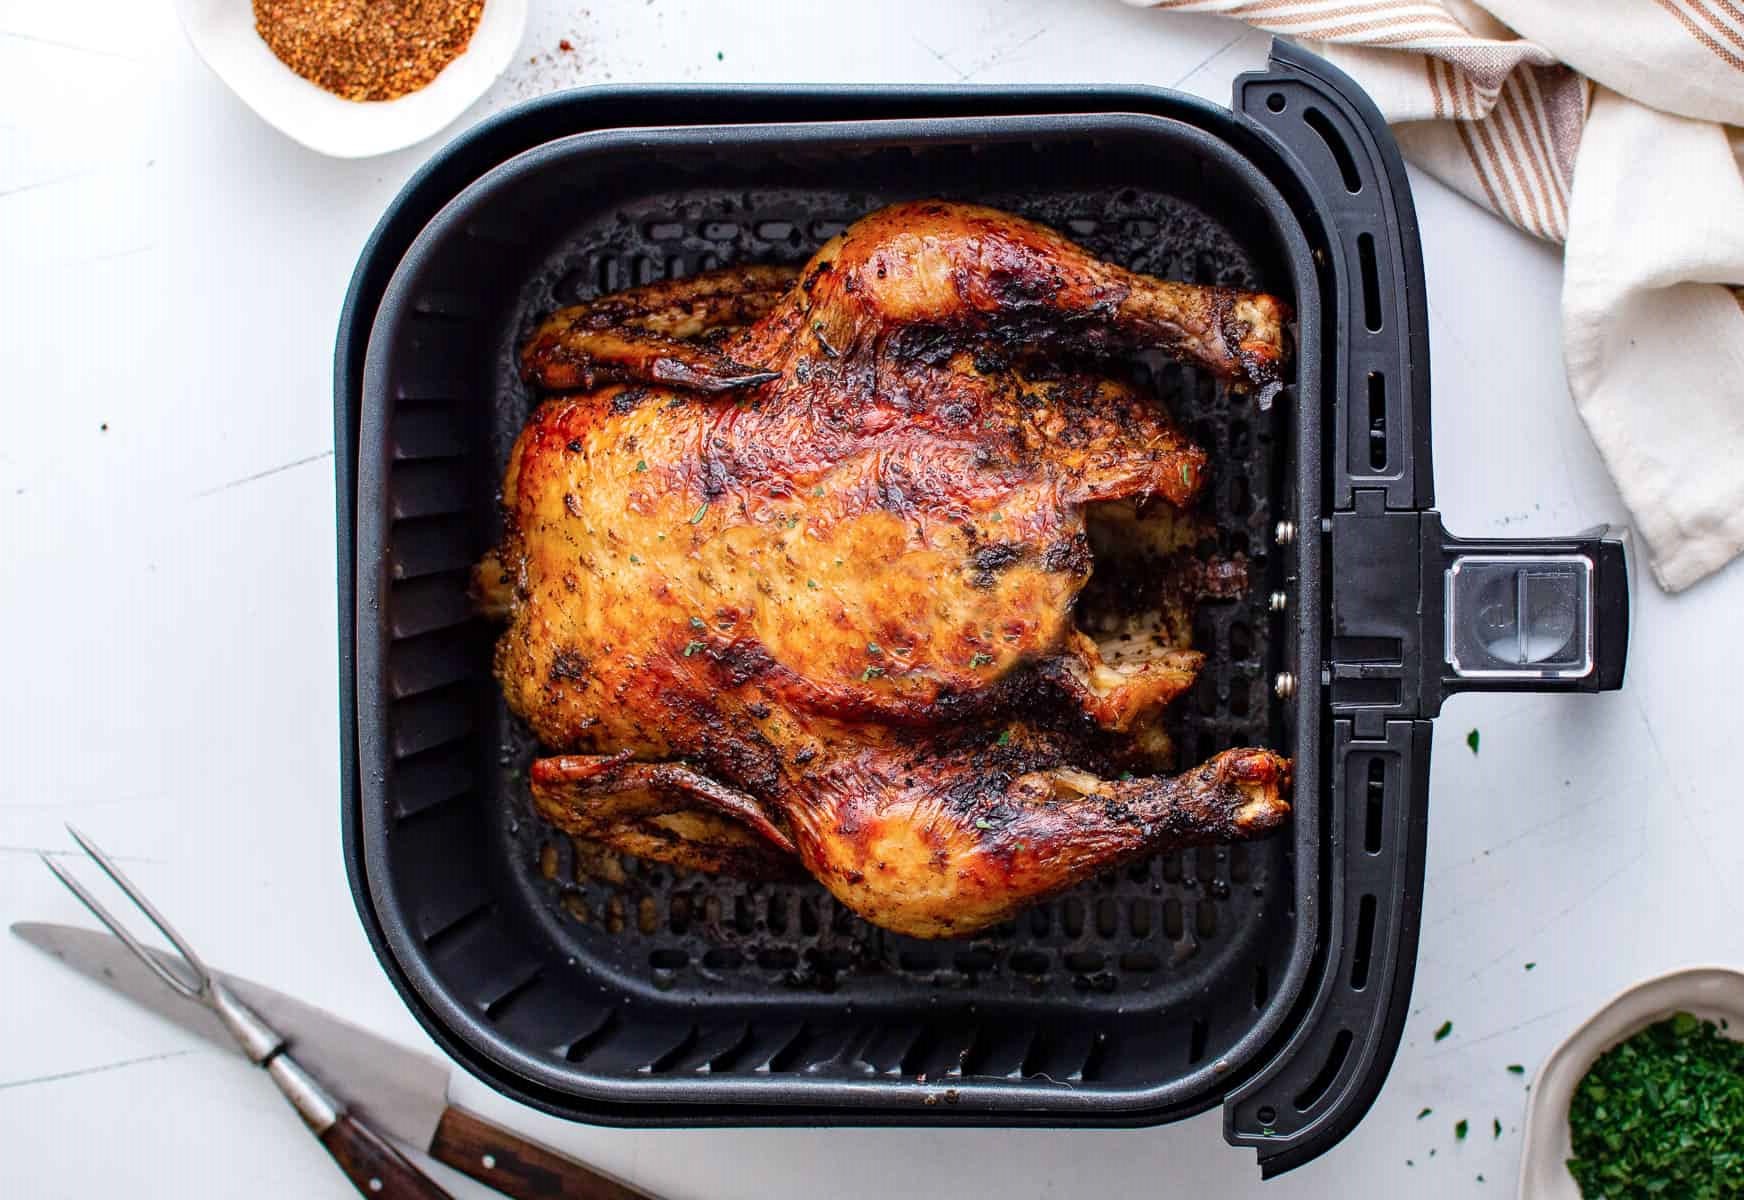 How To Reheat Rotisserie Chicken In Air Fryer